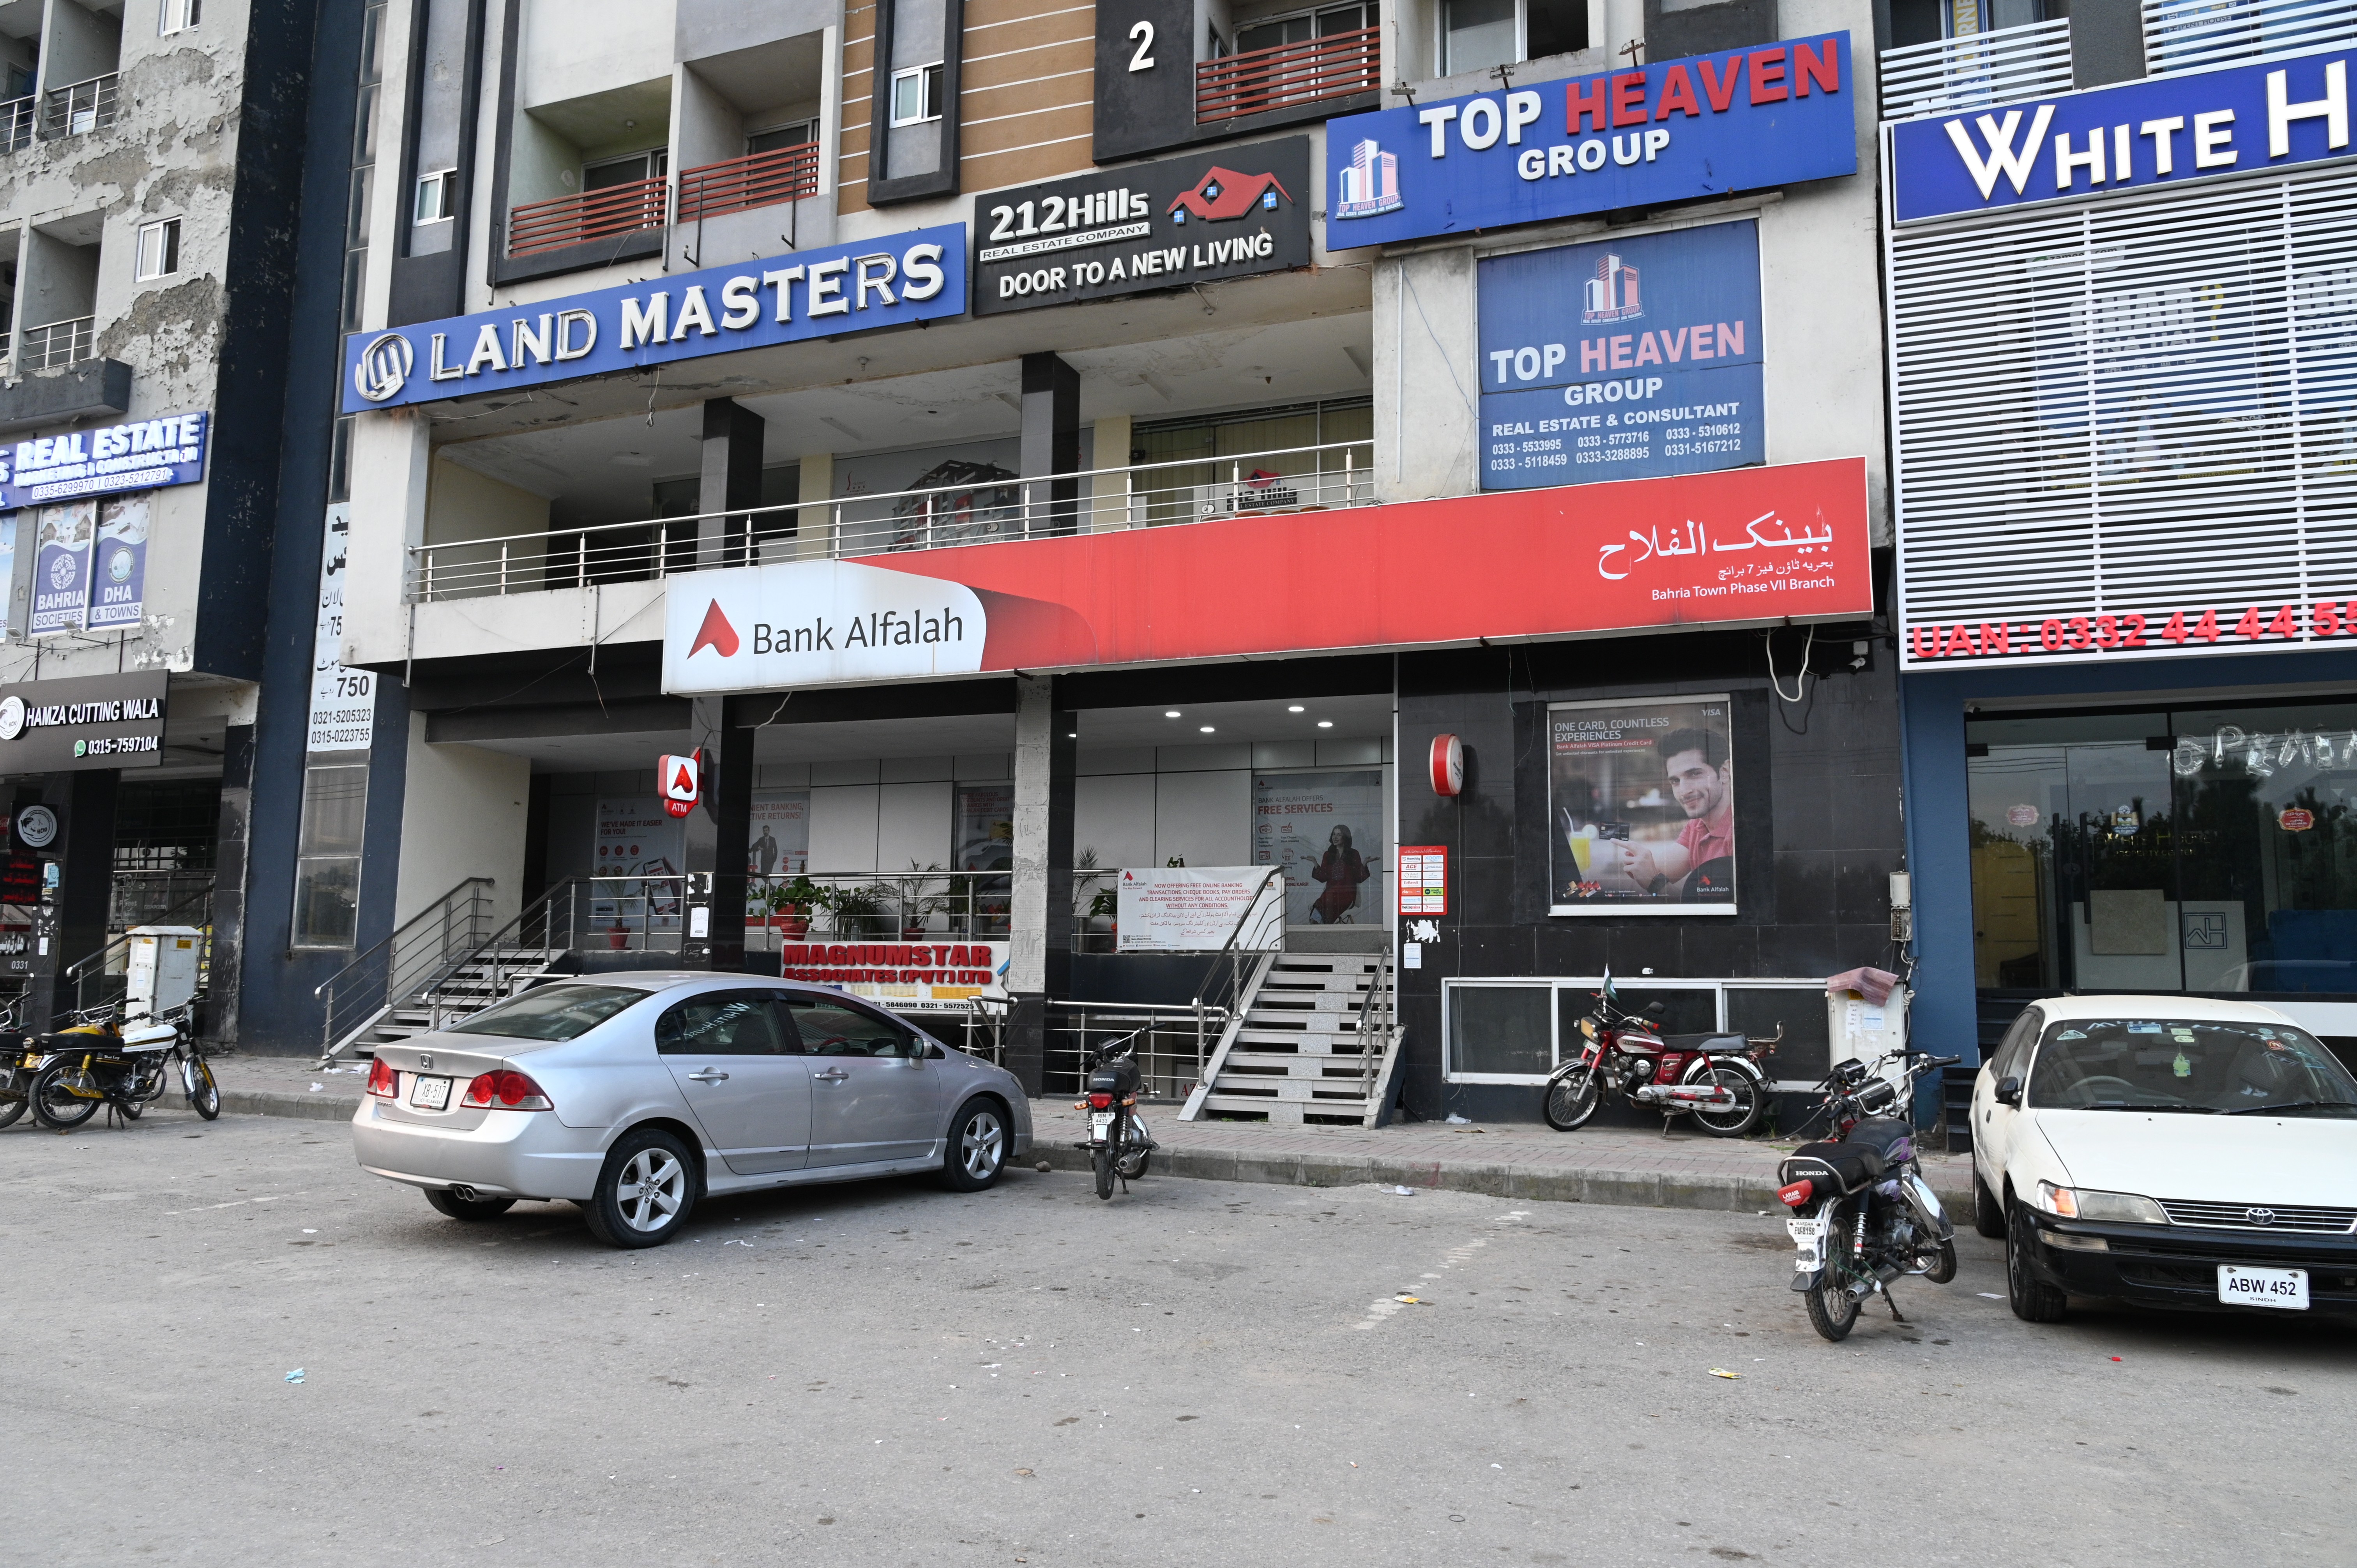 Bank Alfalah, Bahria Town Phase VII Branch